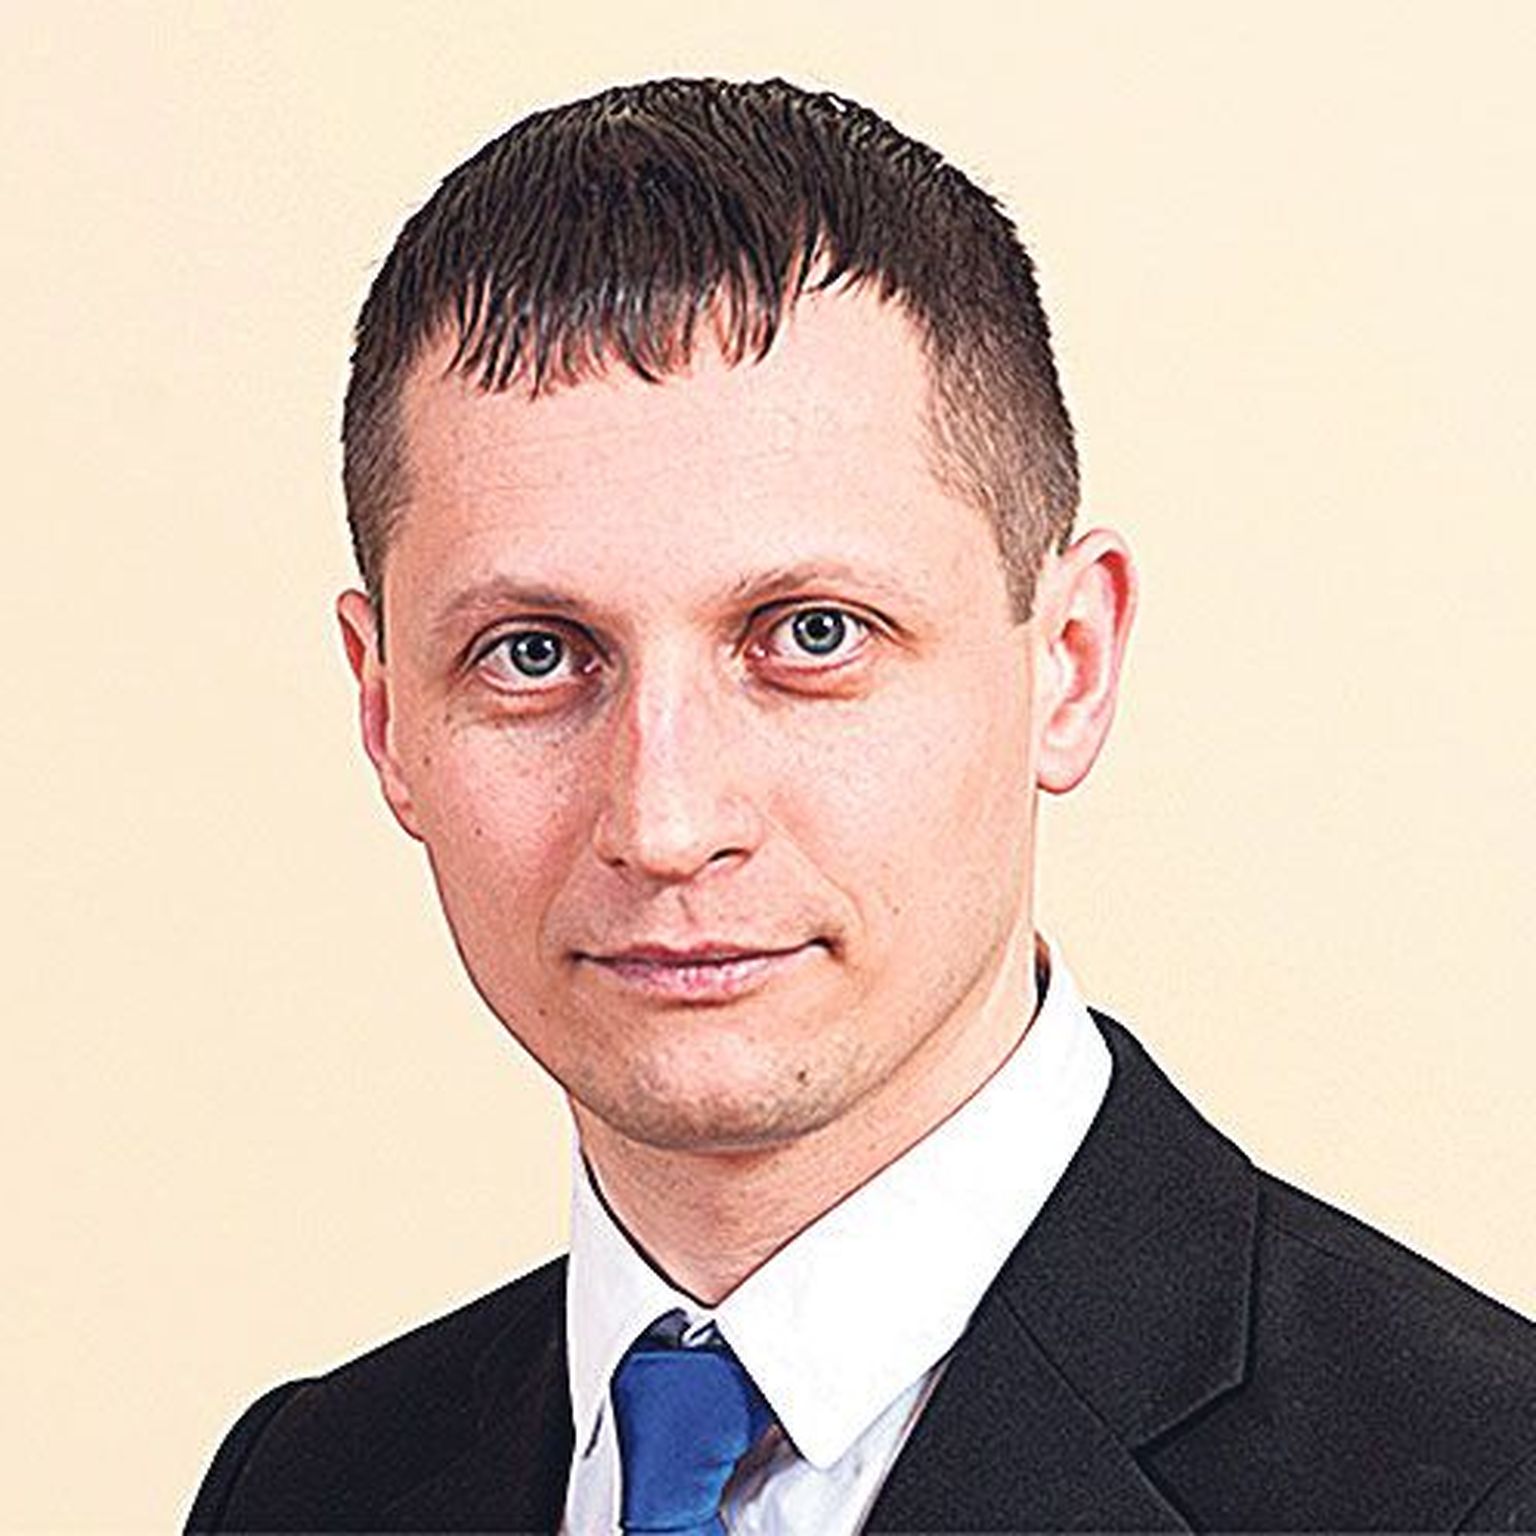 Дмитрий Дмитриев, председатель центристской фракции Люганузеского волостного собрания